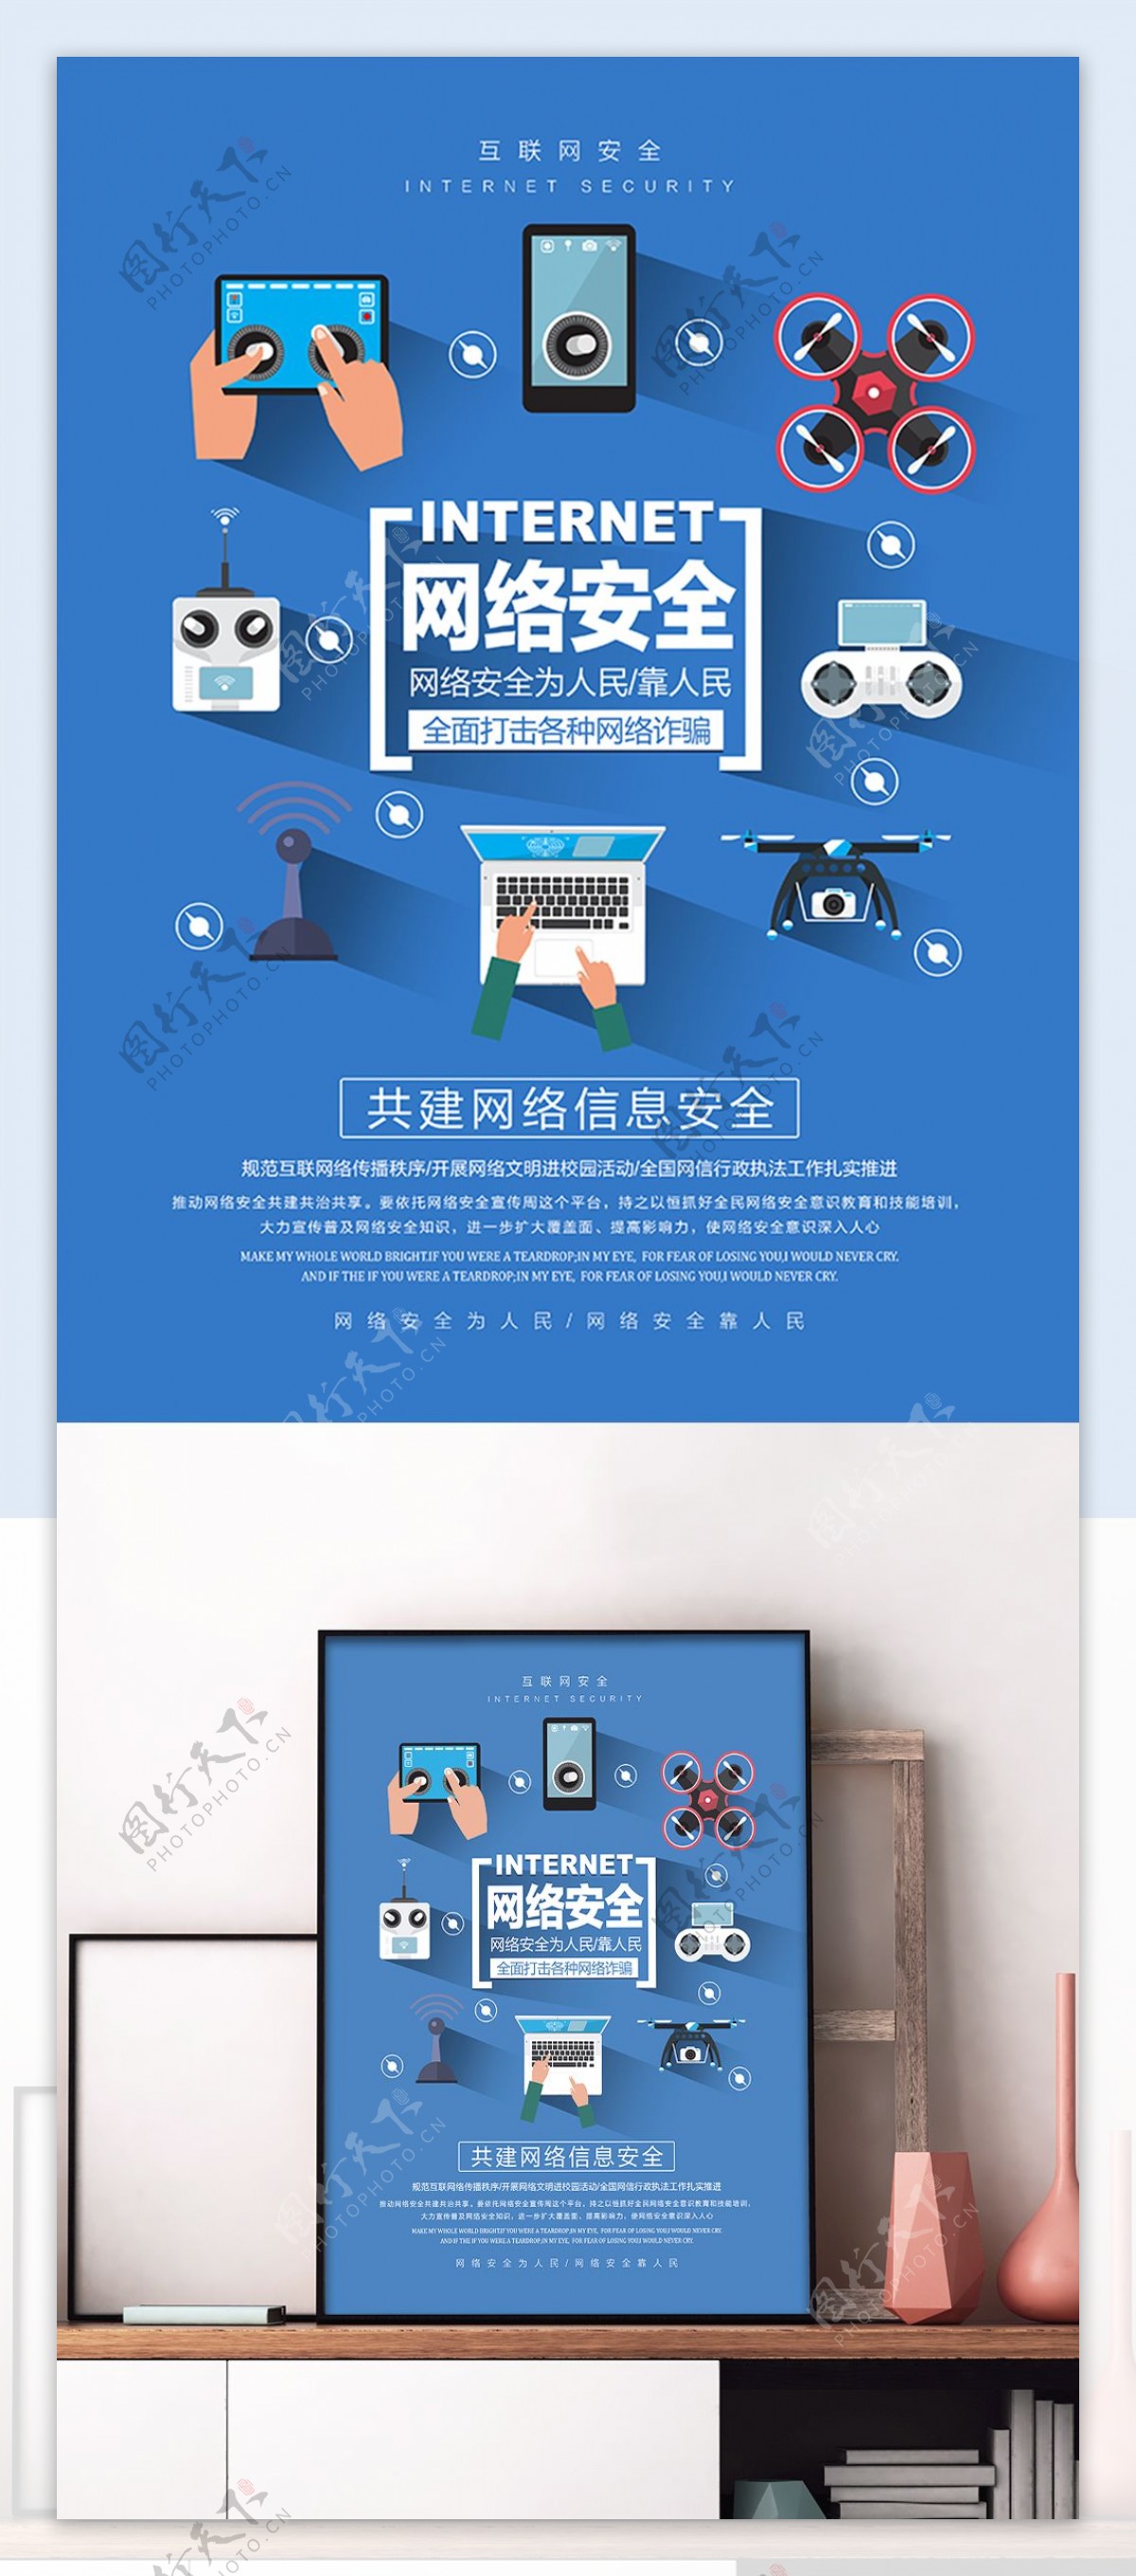 蓝色清新简约网络安全宣传海报设计